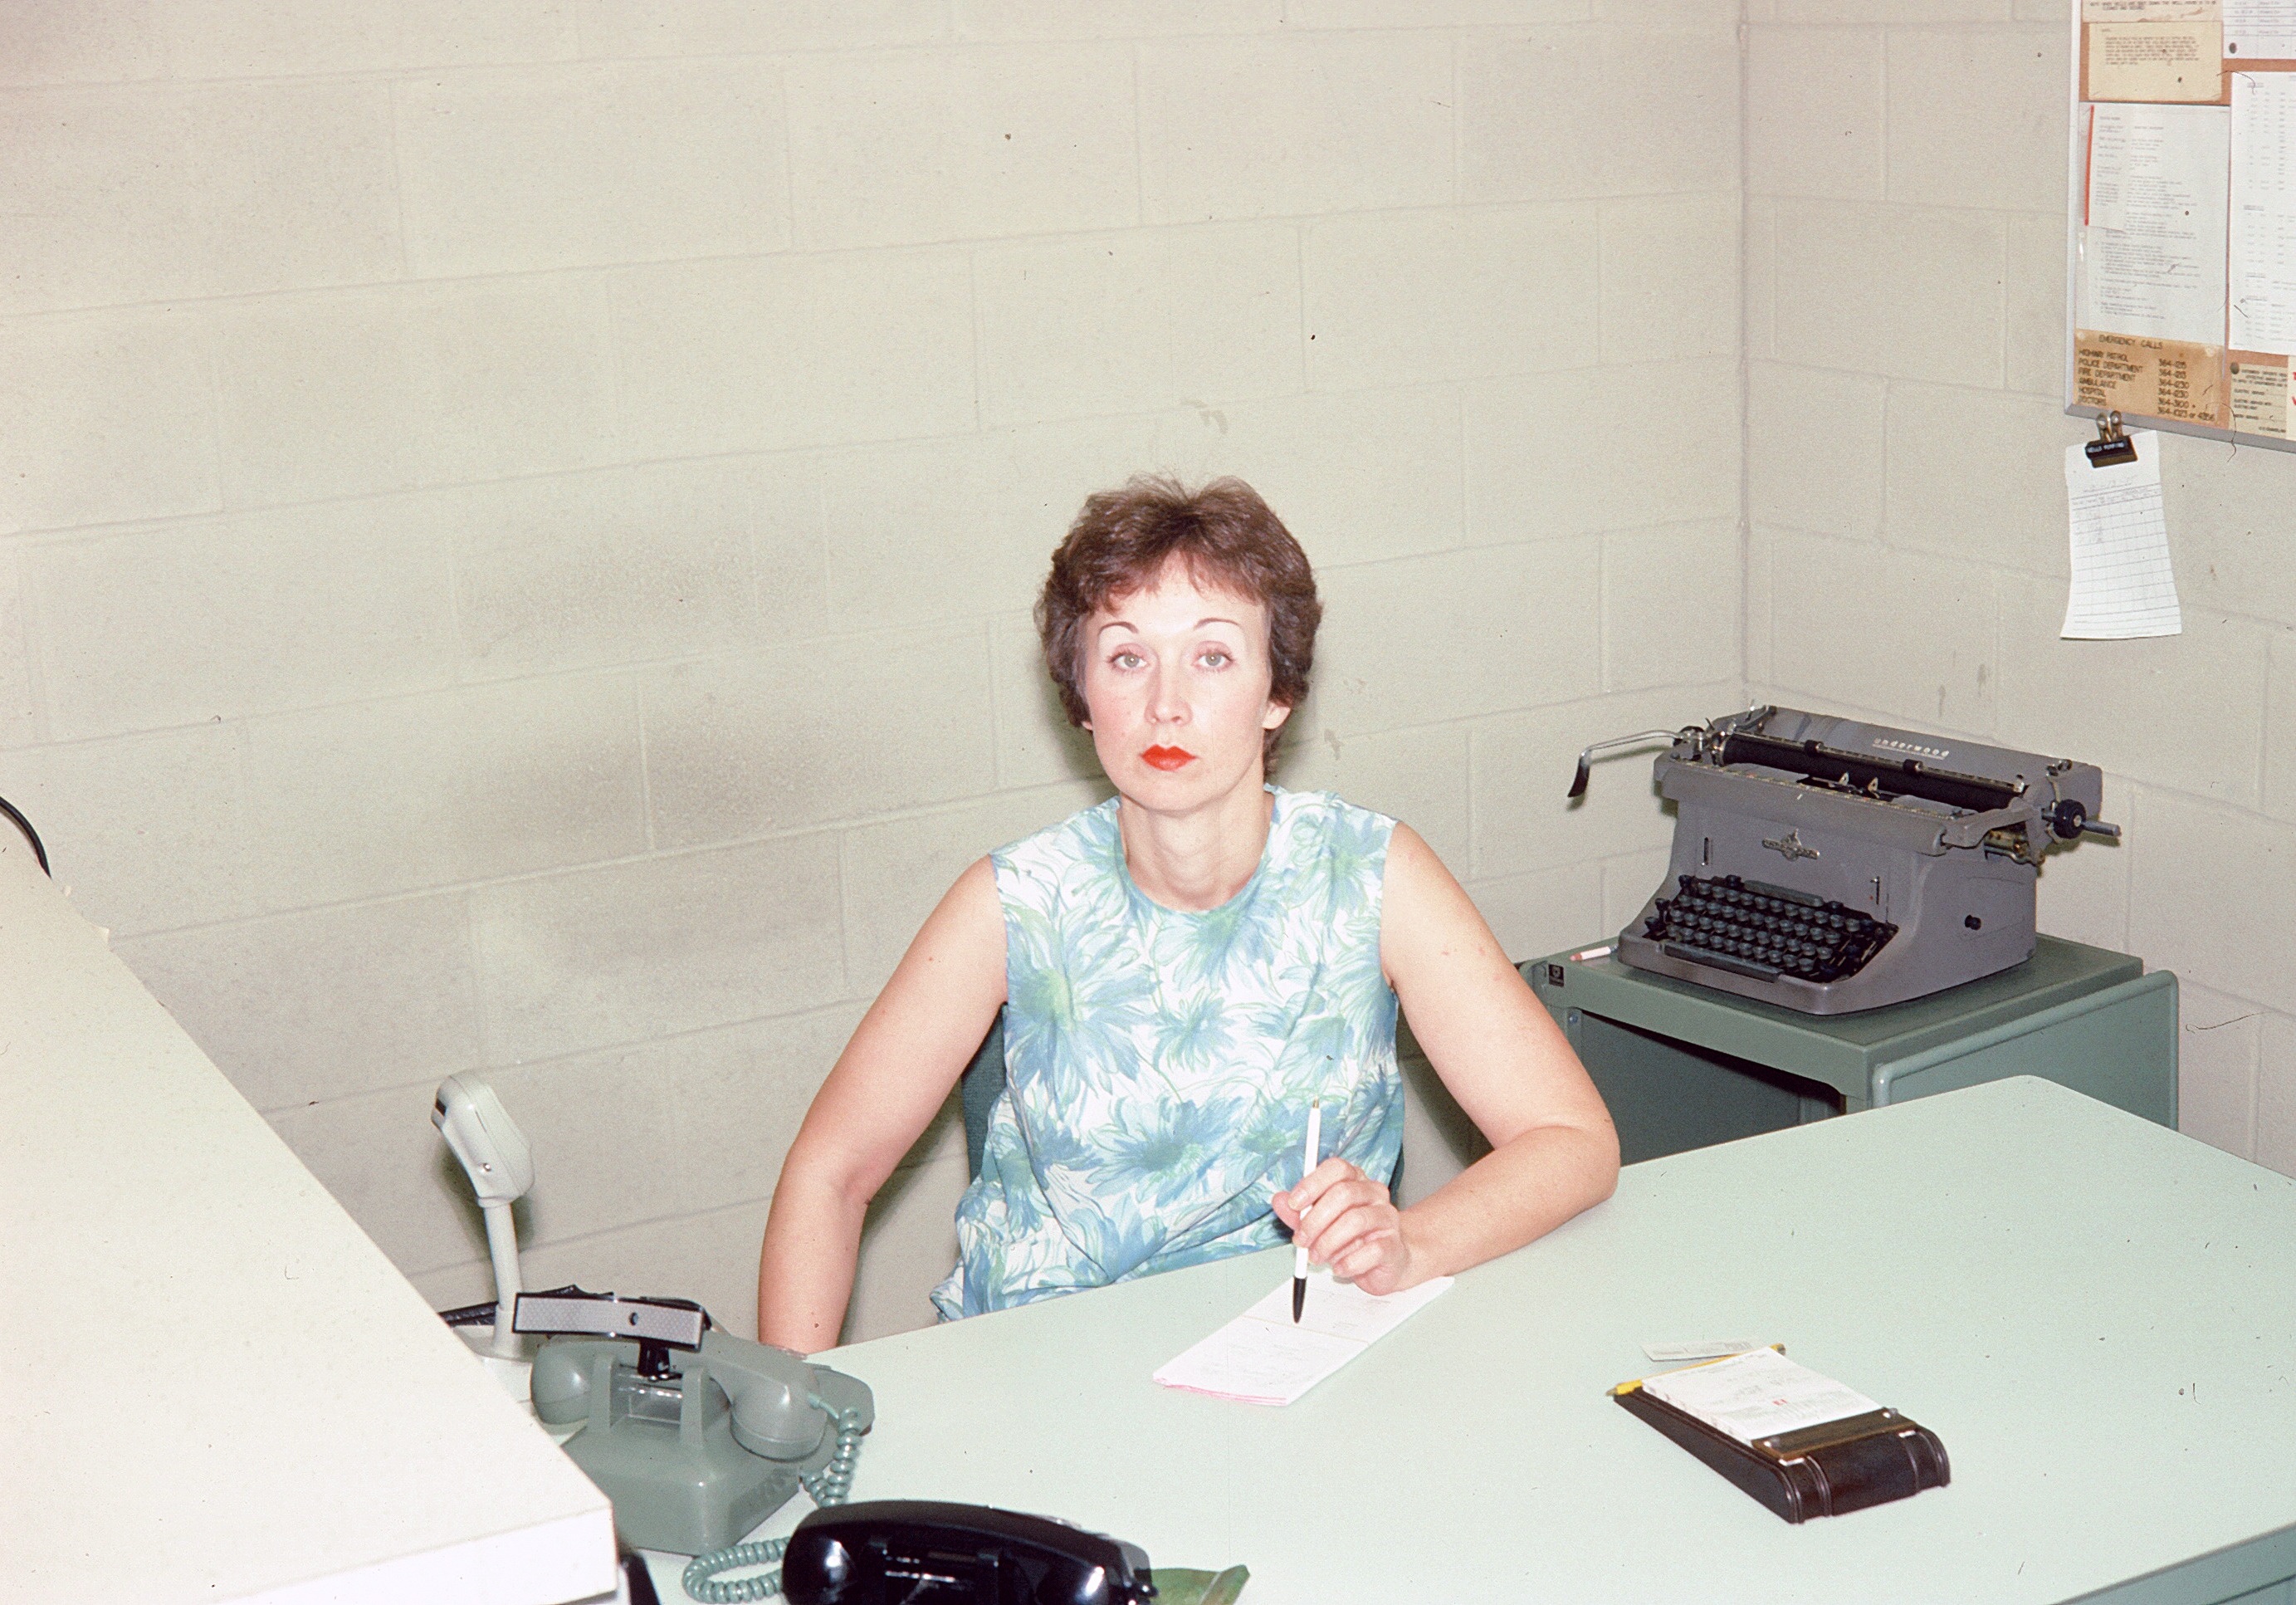 Rosalie, circa 1974 at her desk at RMU.